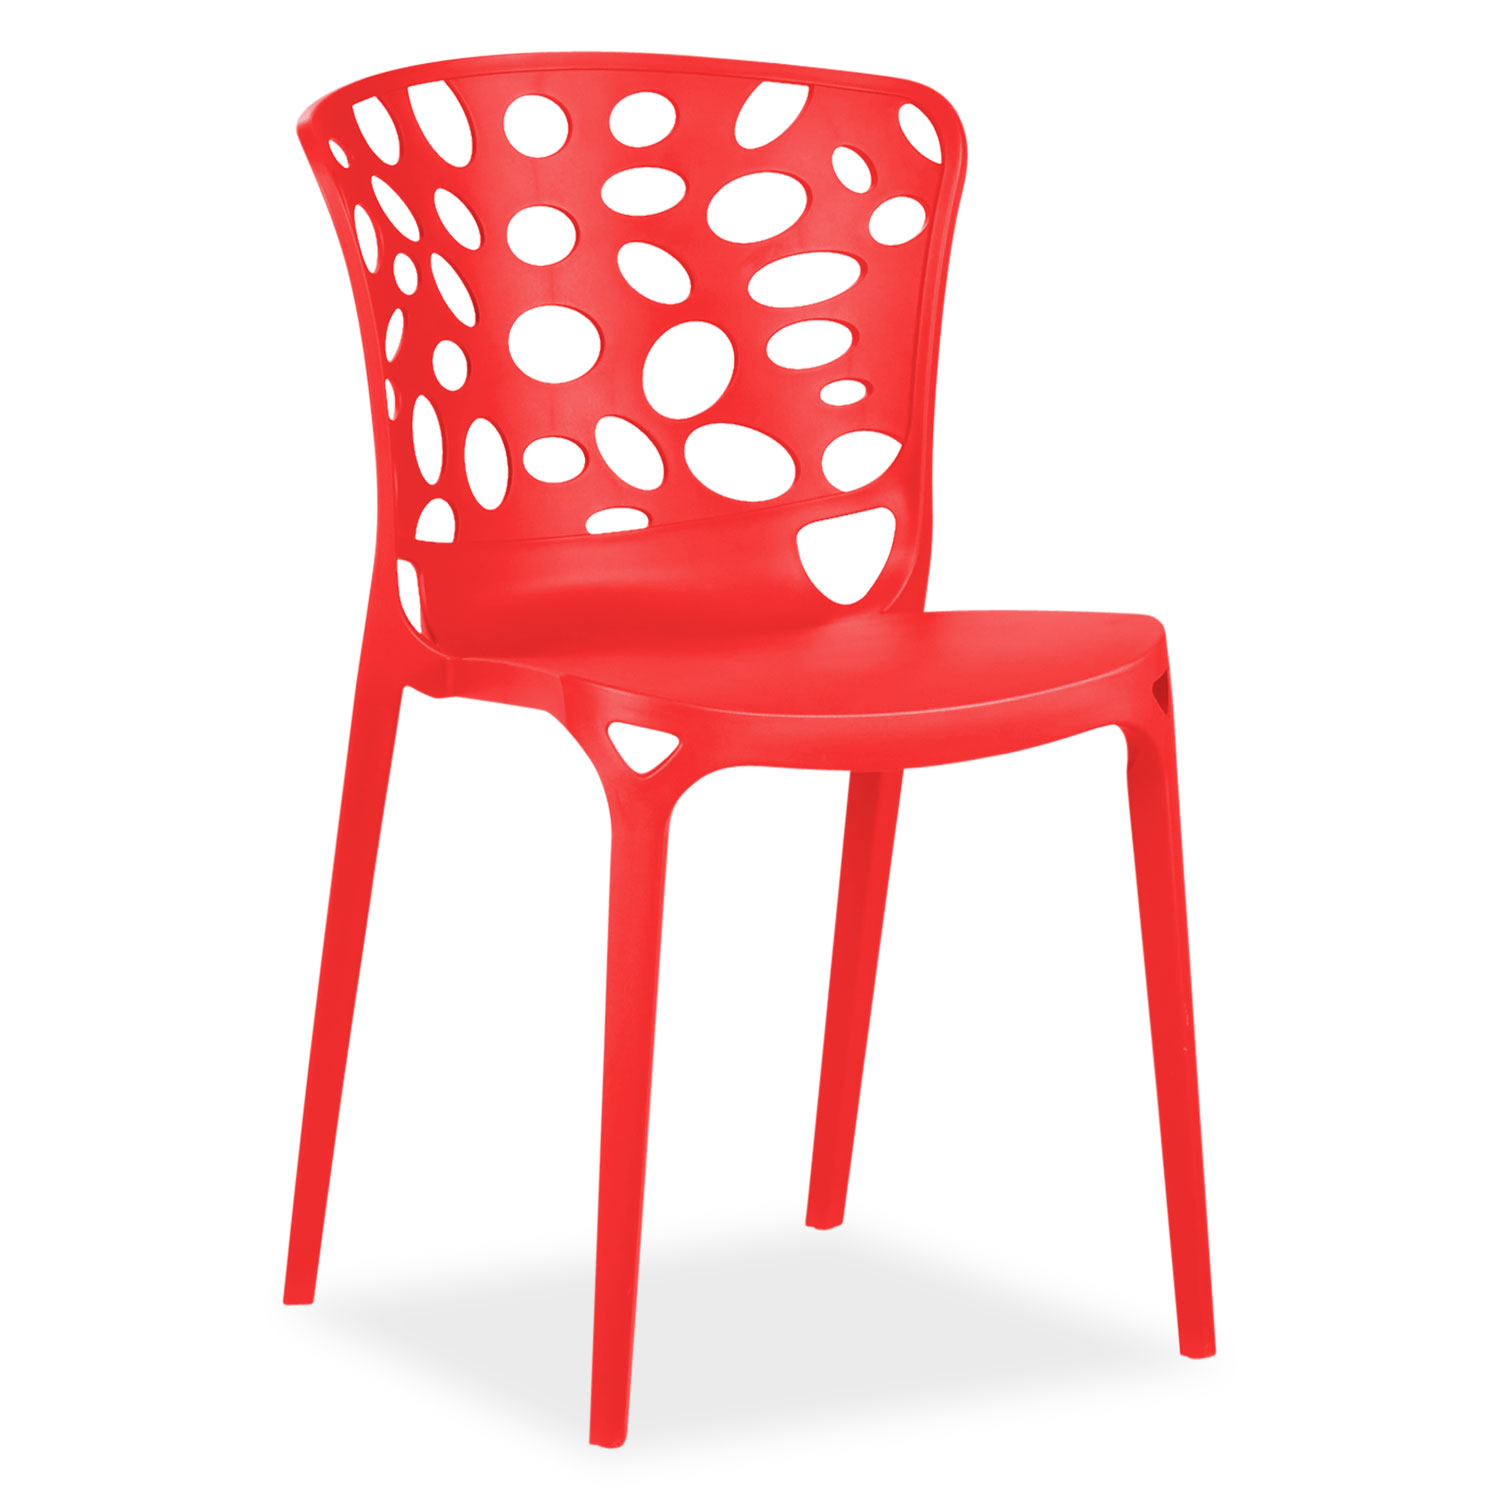 Chaise de jardin Lot de 4 Moderne Rouge Chaises design Plastique Chaises exterieur Chaises empilable Chaise de cuisine